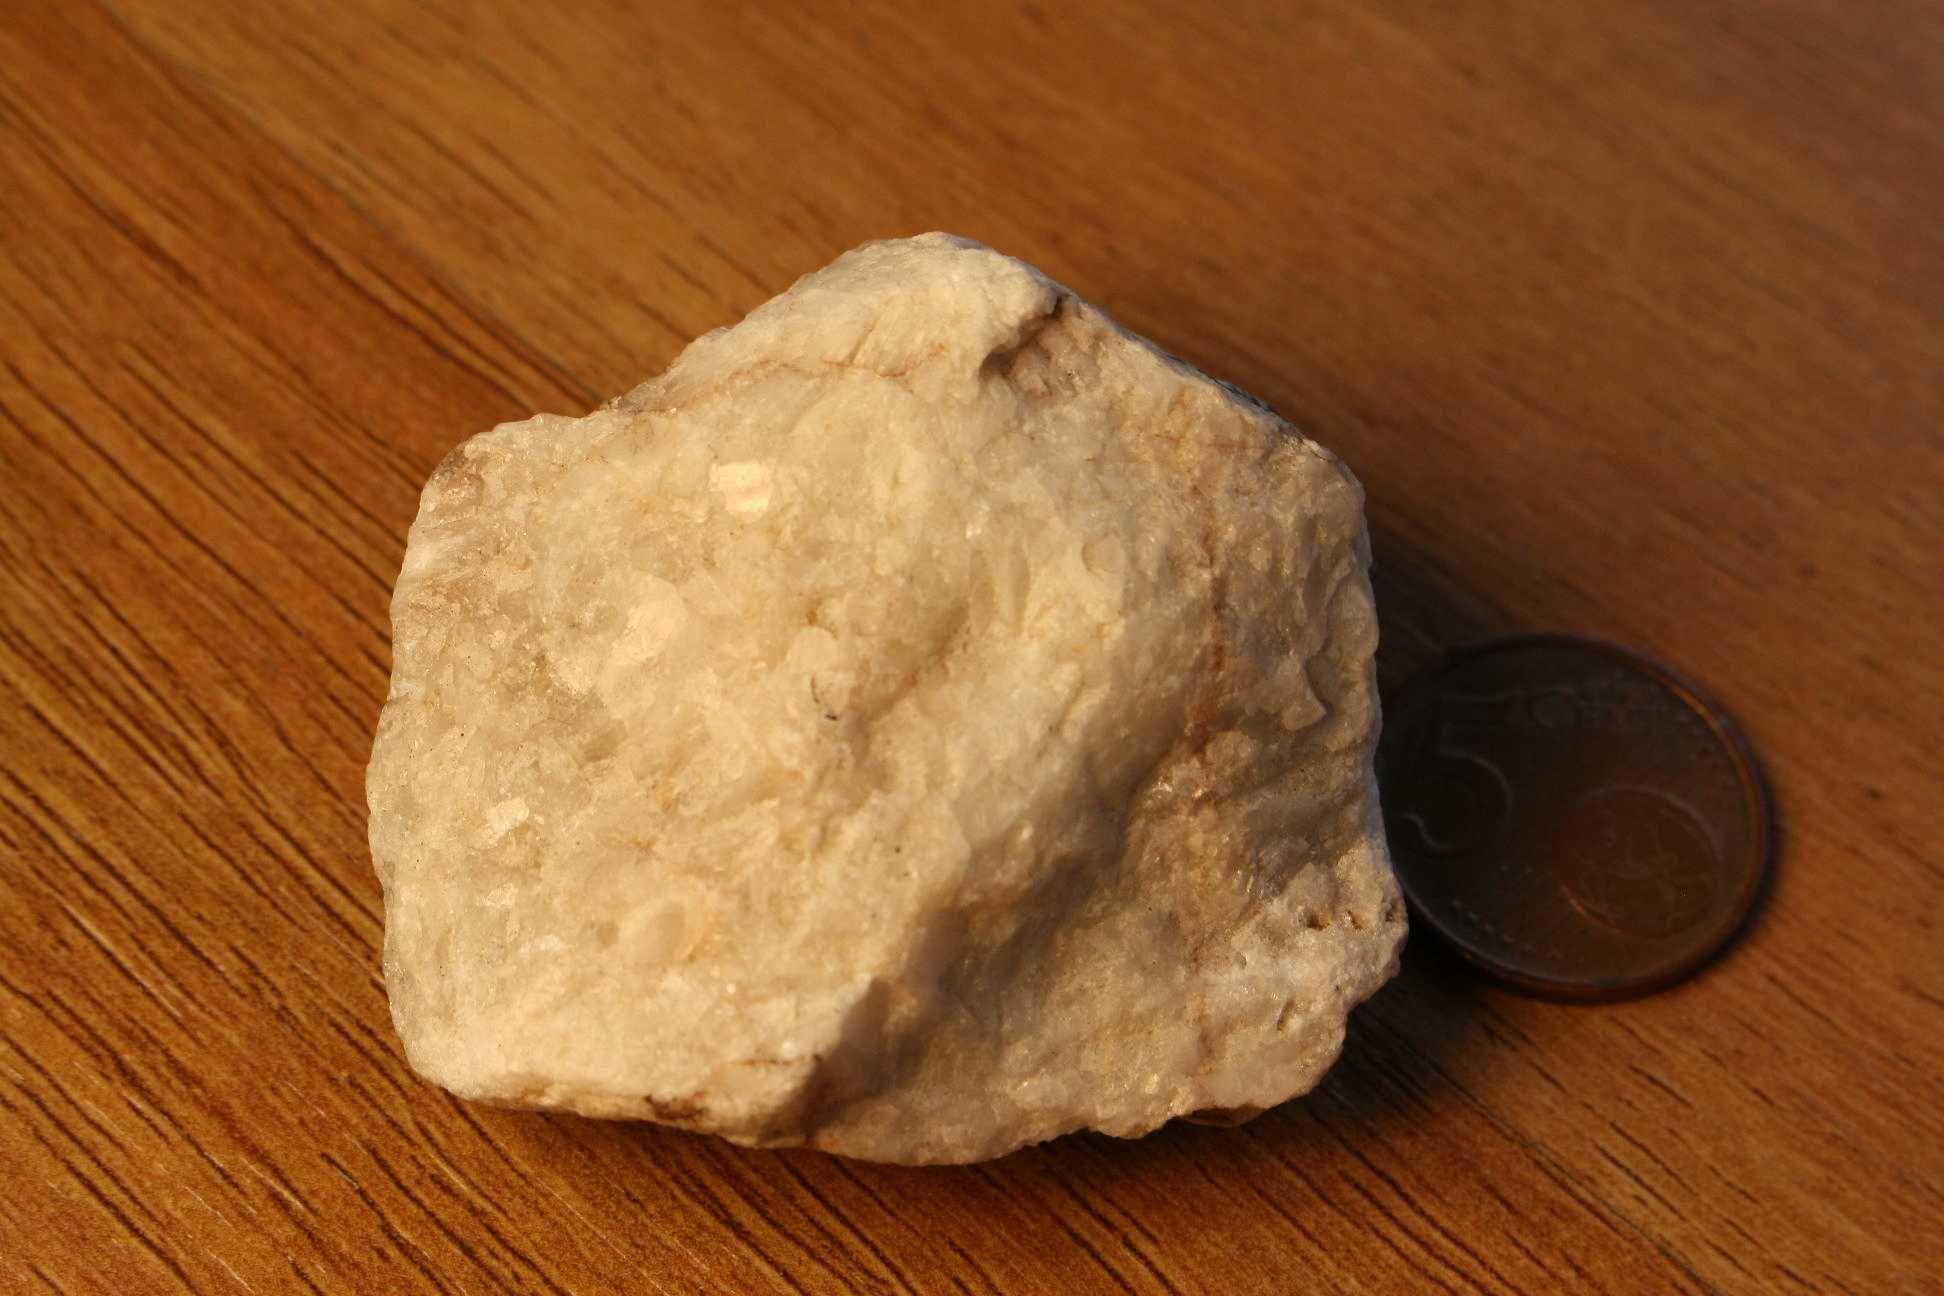 Minerais – Fluorite e barite (inclui envio)